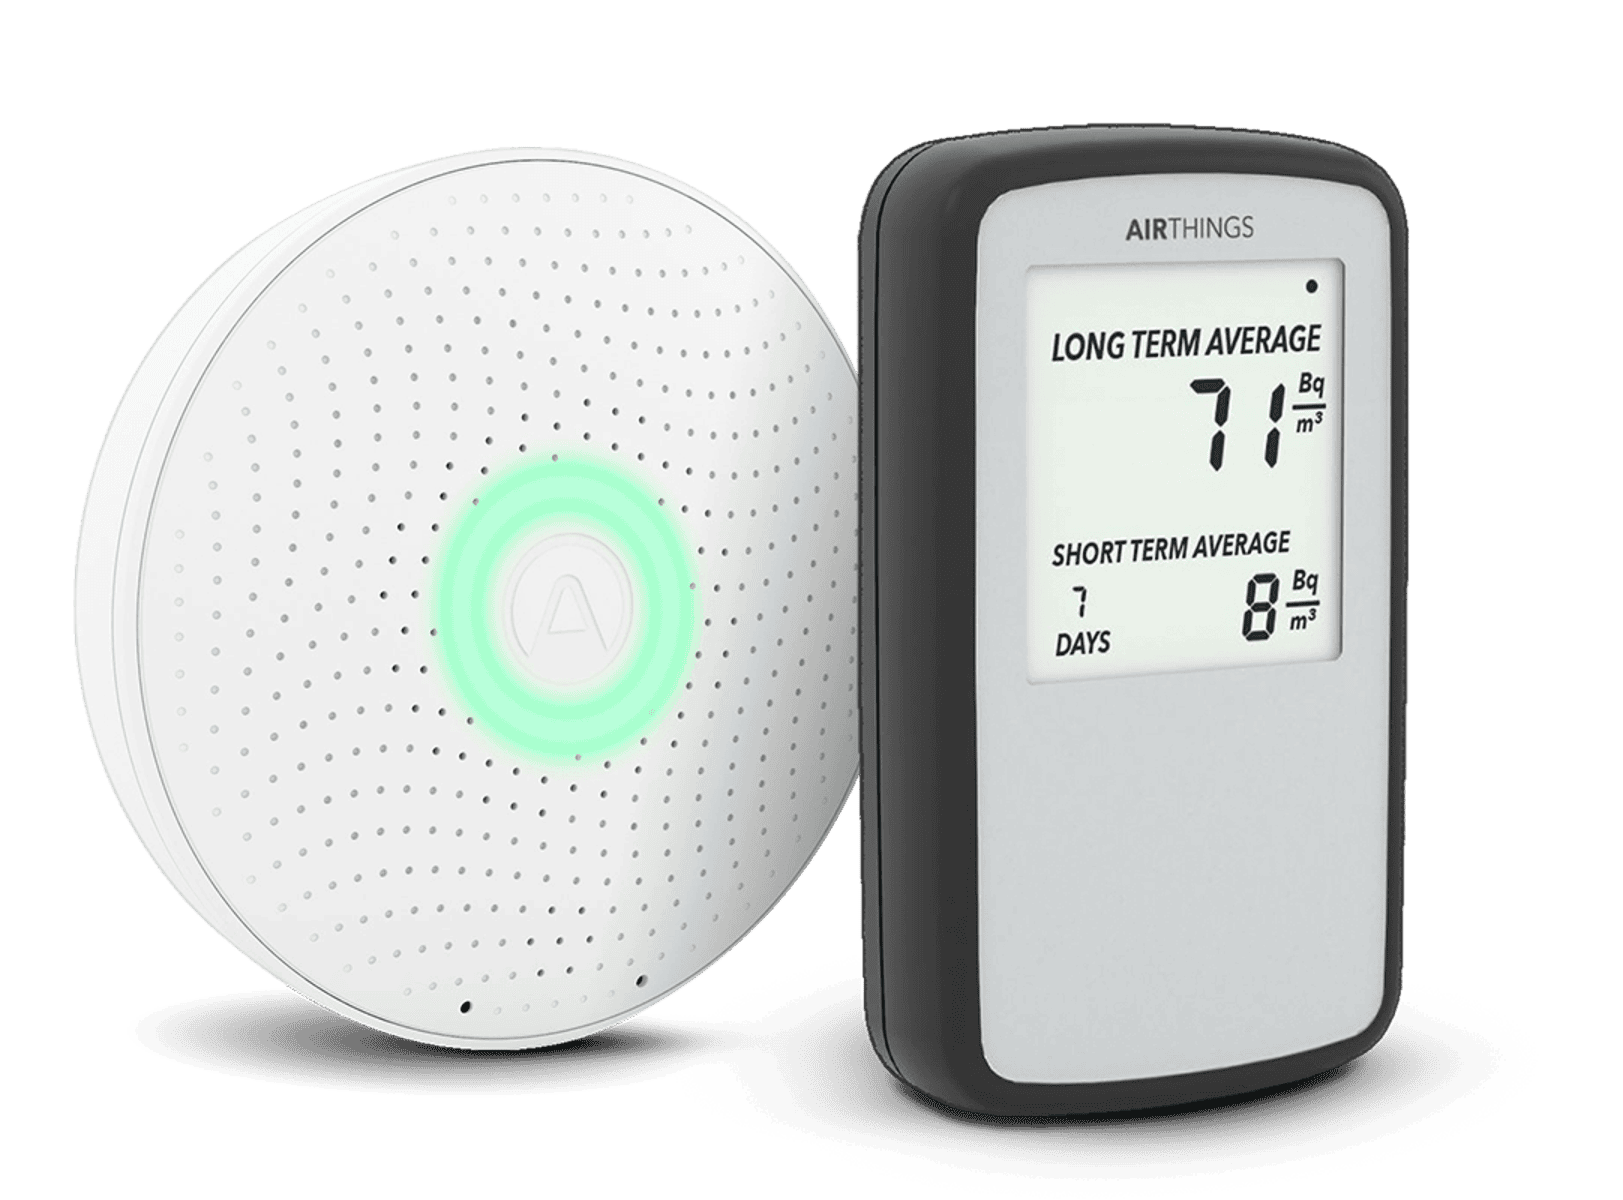 Thermomètre intérieur/ extérieur sans fil, 1 unité – BIOS